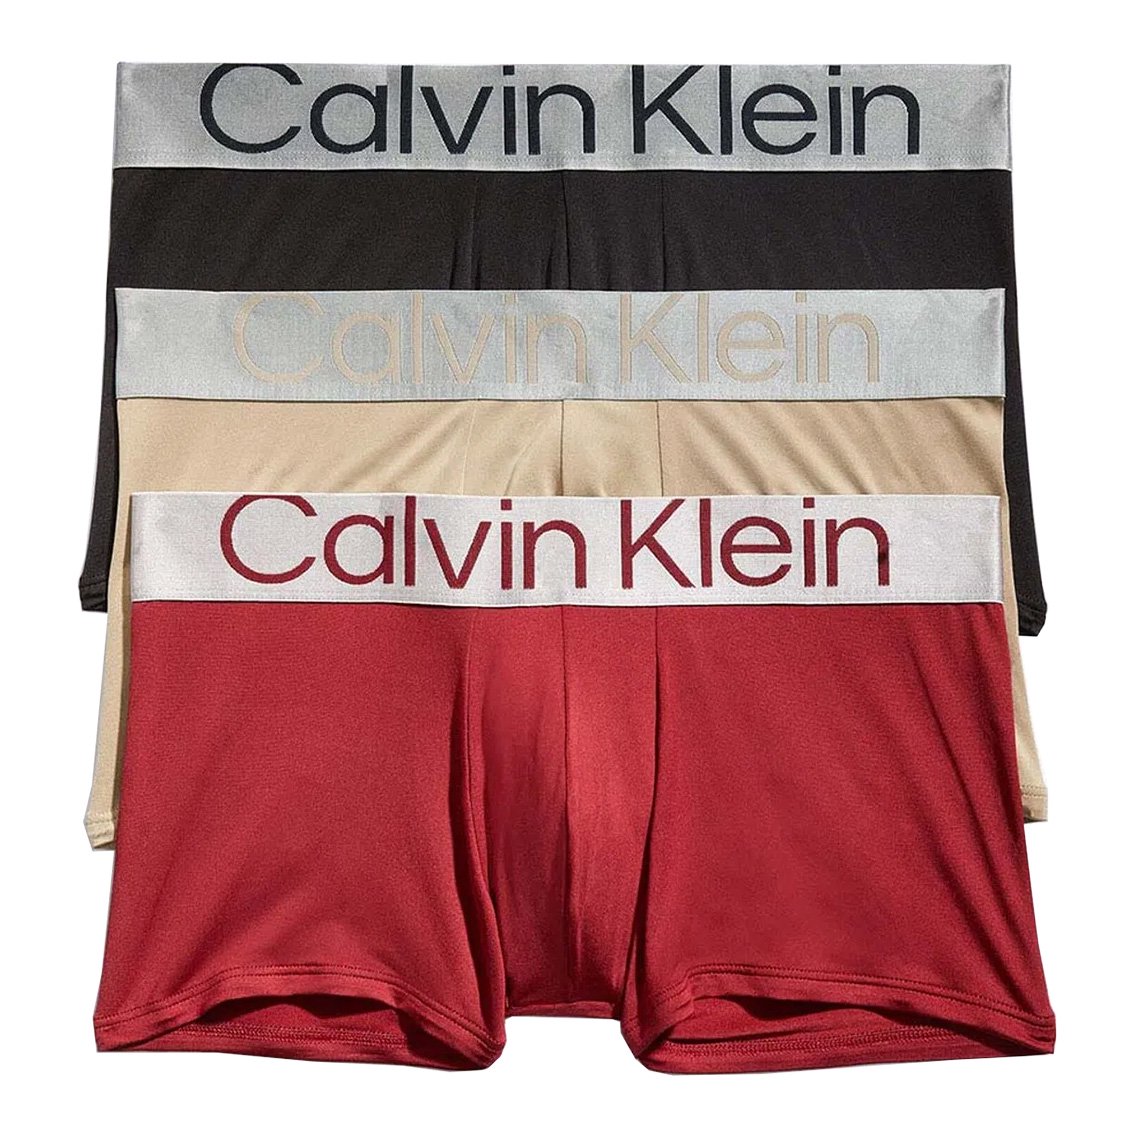 Calvin Klein(カルバンクライン)[NB3074-911]:ボクサーパンツ,男性下着